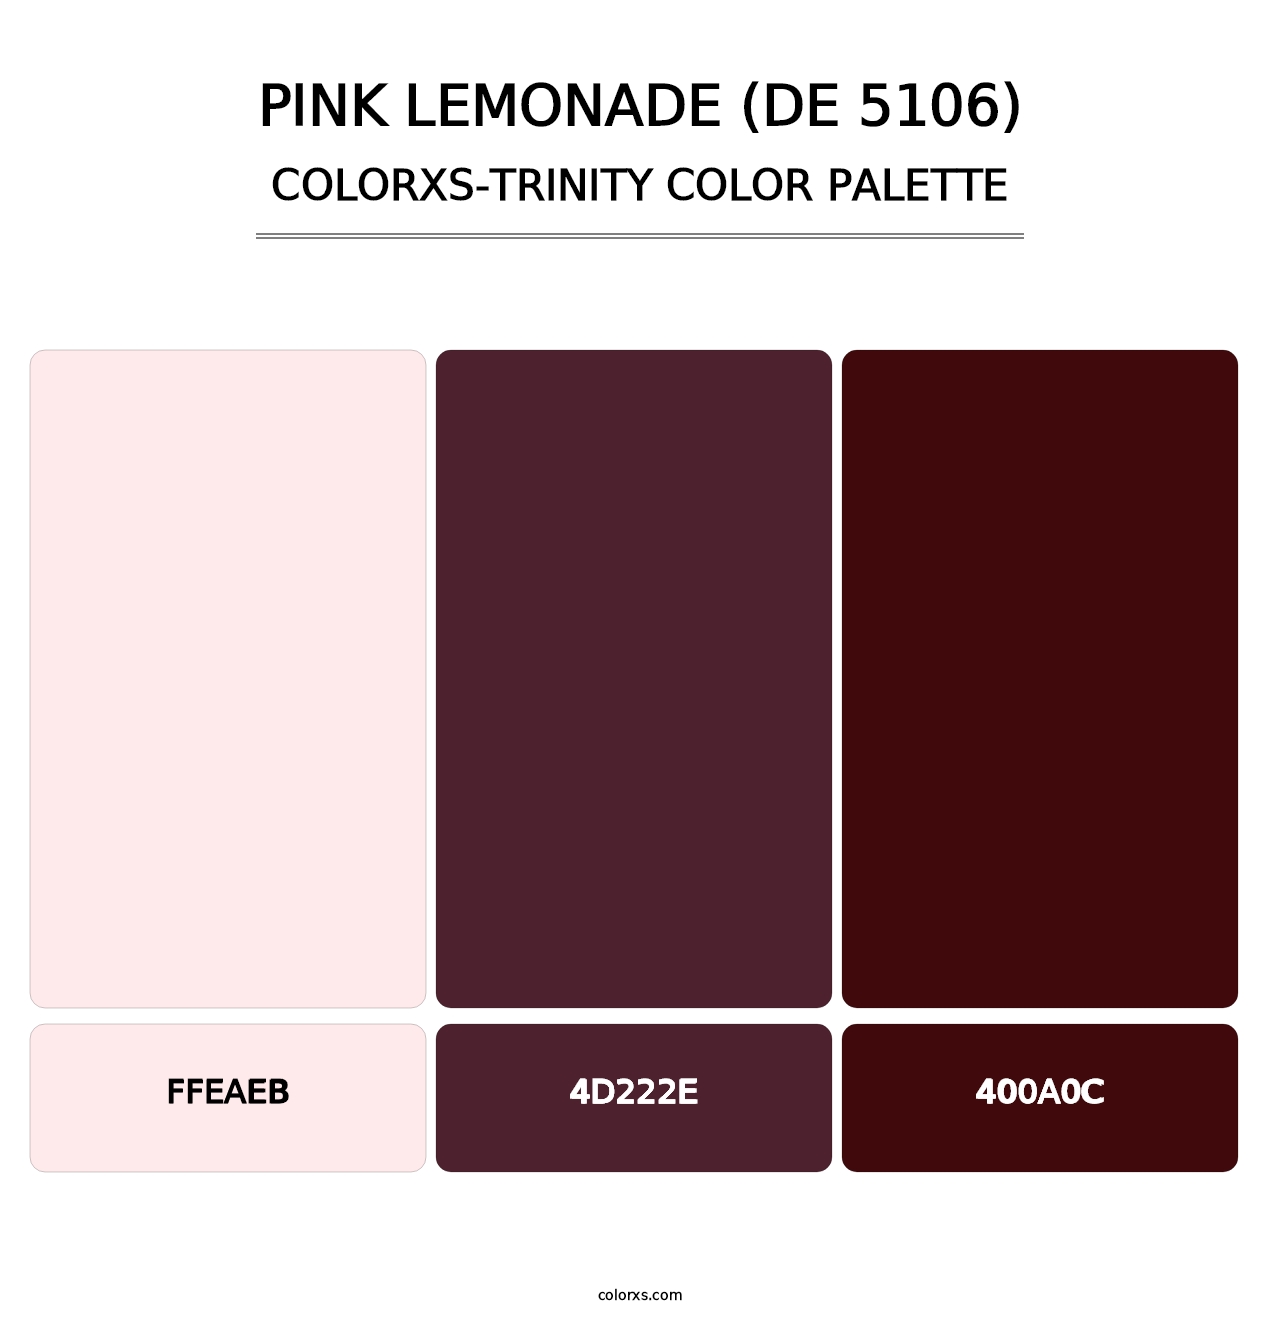 Pink Lemonade (DE 5106) - Colorxs Trinity Palette